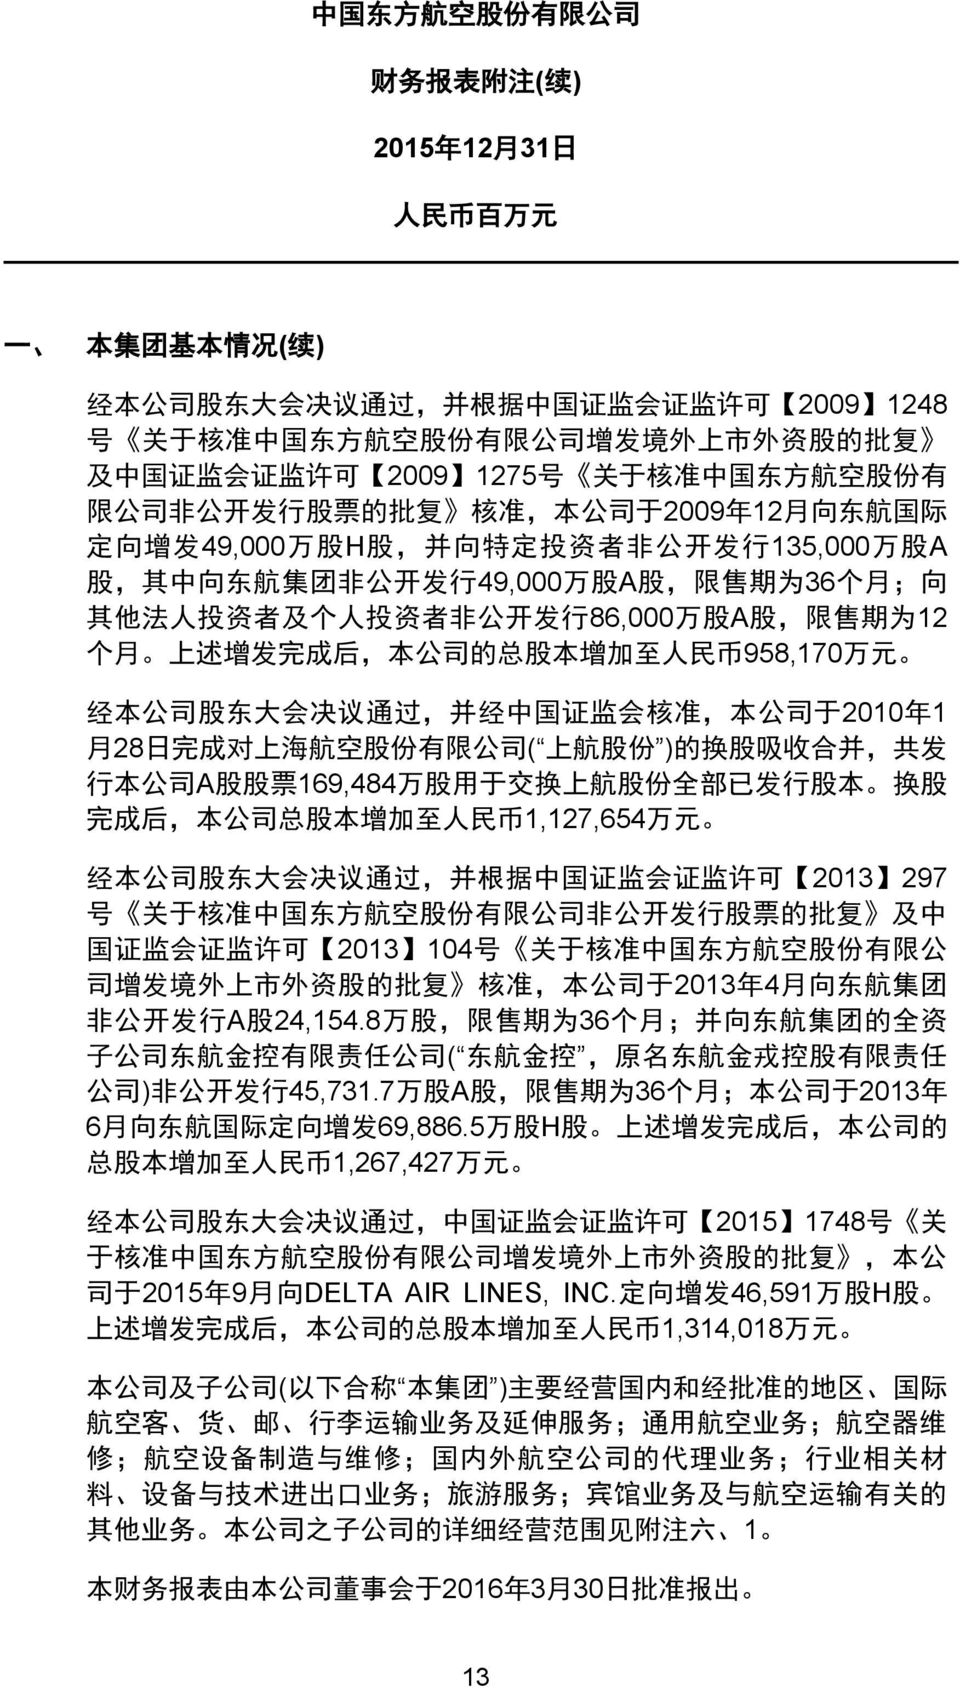 个 人 投 资 者 非 公 开 发 行 86,000 万 股 A 股, 限 售 期 为 12 个 月 上 述 增 发 完 成 后, 本 公 司 的 总 股 本 增 加 至 人 民 币 958,170 万 元 经 本 公 司 股 东 大 会 决 议 通 过, 并 经 中 国 证 监 会 核 准, 本 公 司 于 2010 年 1 月 28 日 完 成 对 上 海 航 空 股 份 有 限 公 司 (